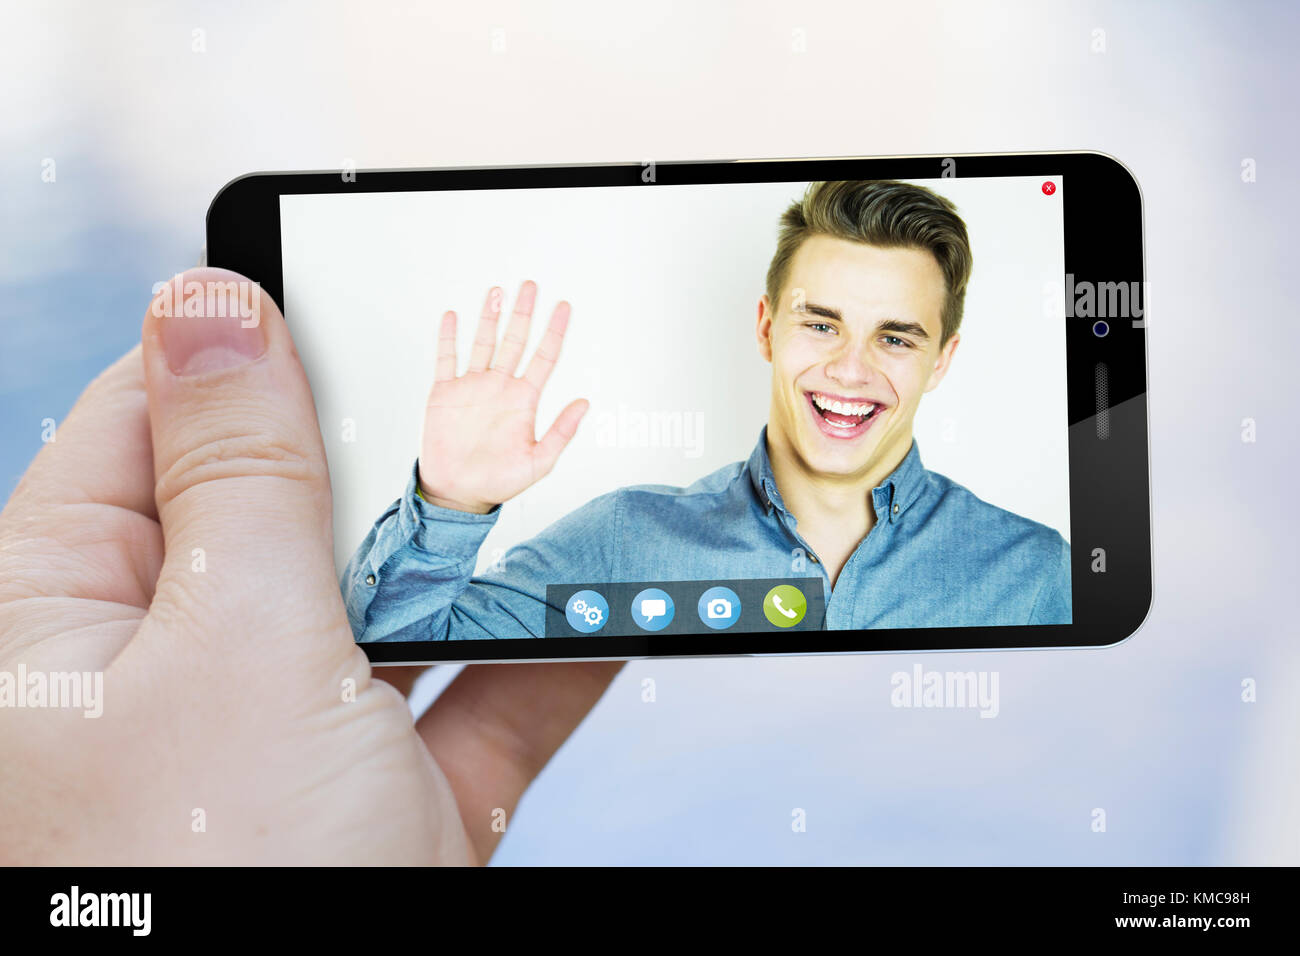 Comunicazioni mobili concetto: mano azienda di uno smartphone con la video chat app schermo. i grafici dello schermo sono costituiti. Foto Stock